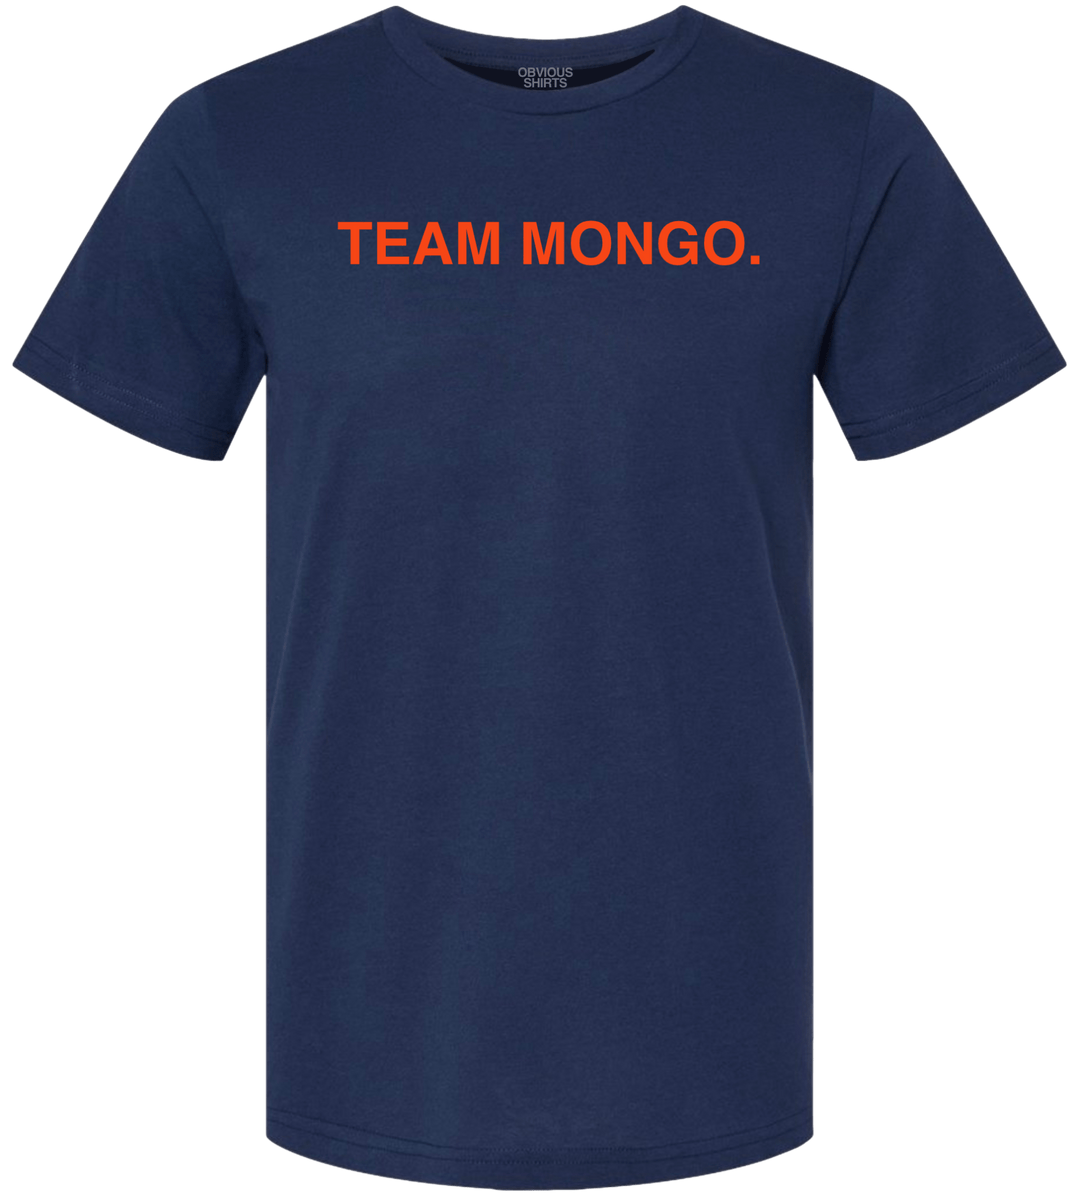 TEAM MONGO - OBVIOUS SHIRTS